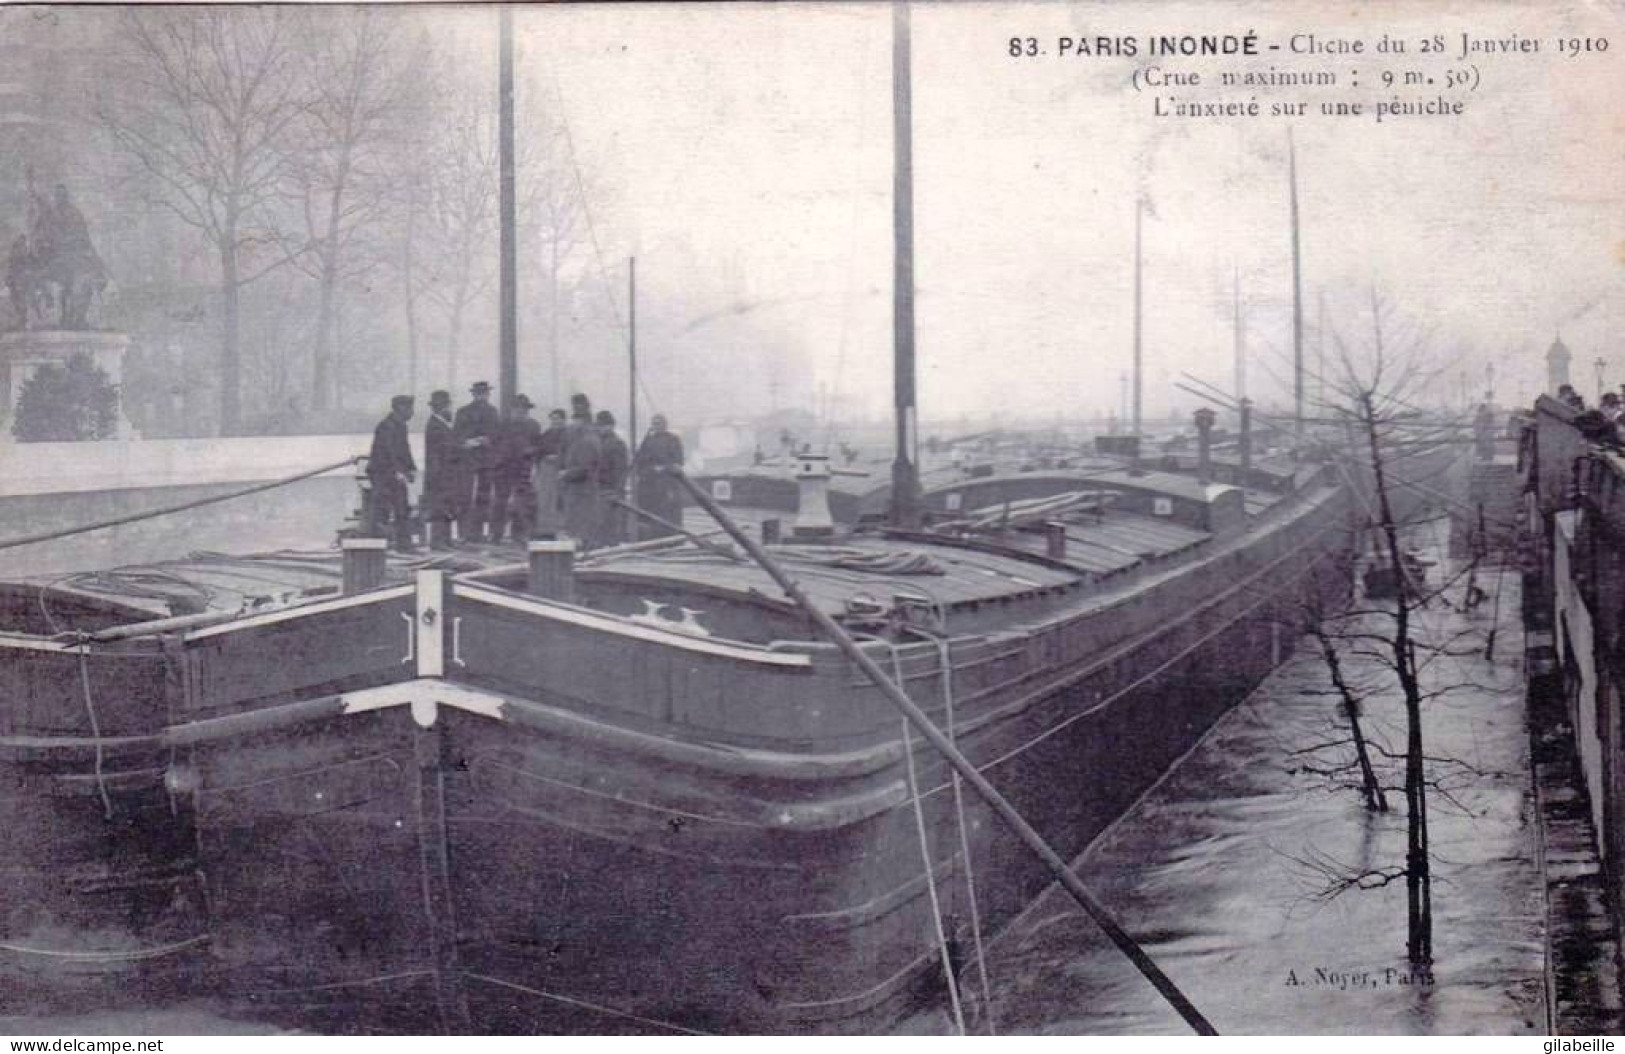 75 - PARIS Inondé - L Anxiété Sur Une Péniche - Le 28 Janvier 1910 - Überschwemmung 1910